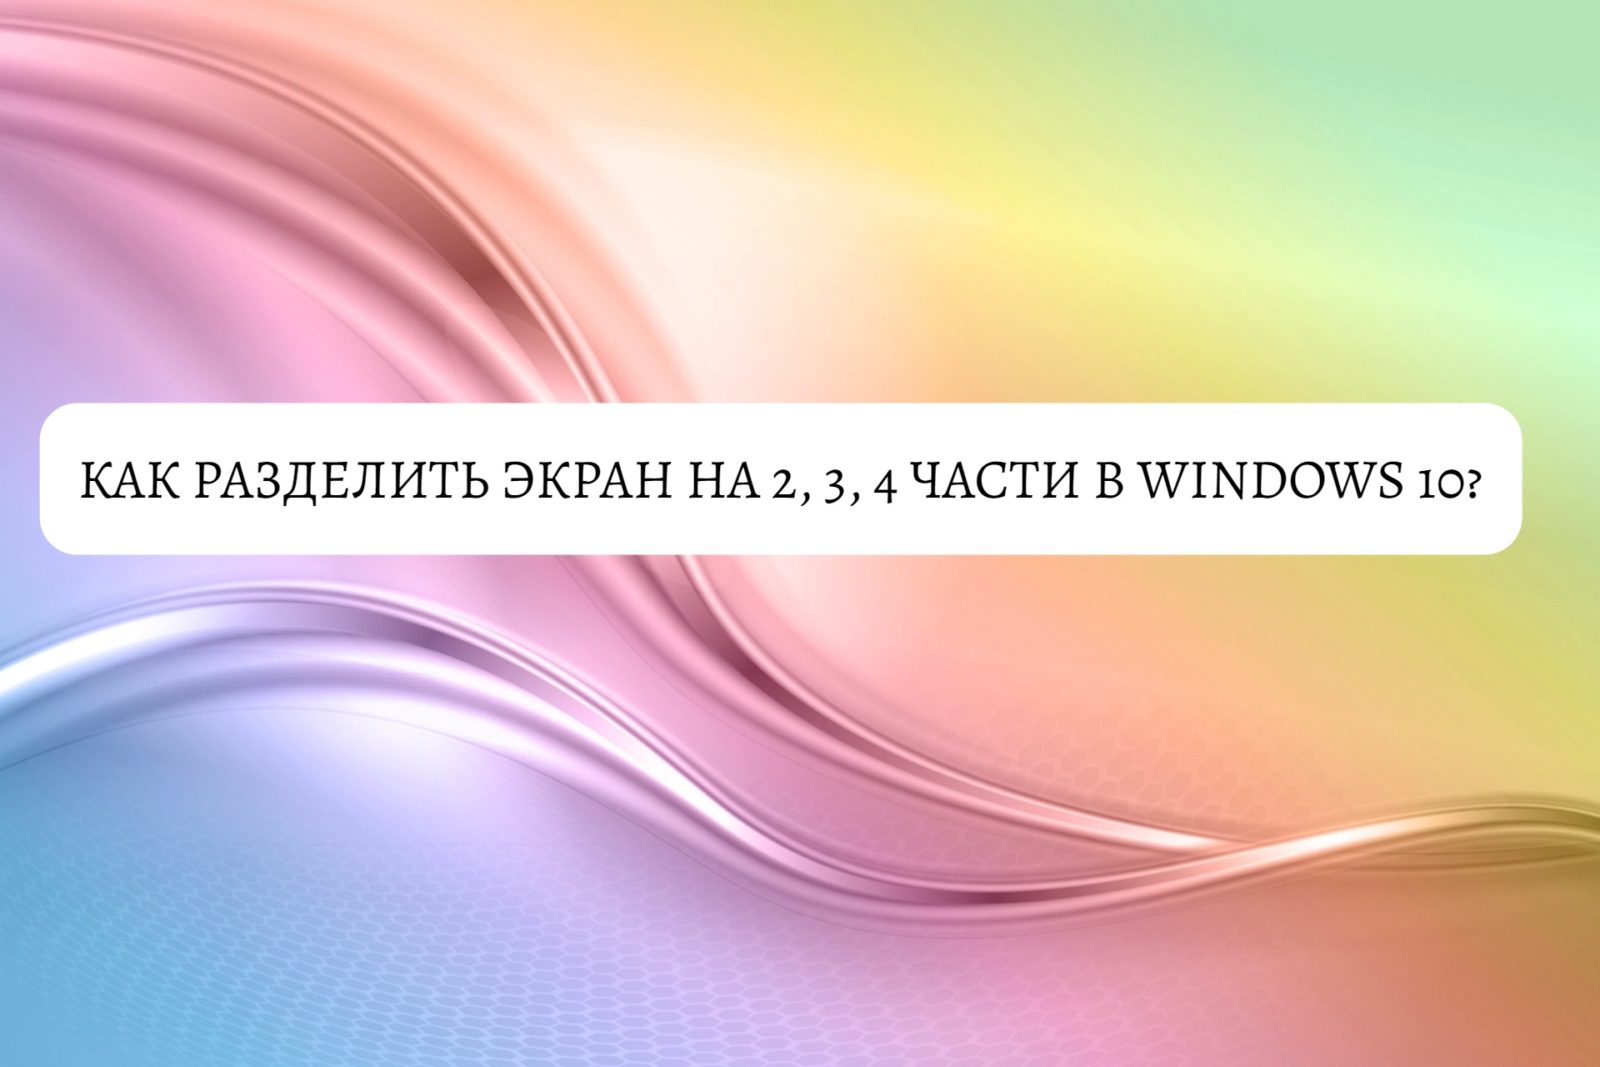 Как разделить экран на 2, 3, 4 части в Windows 10?